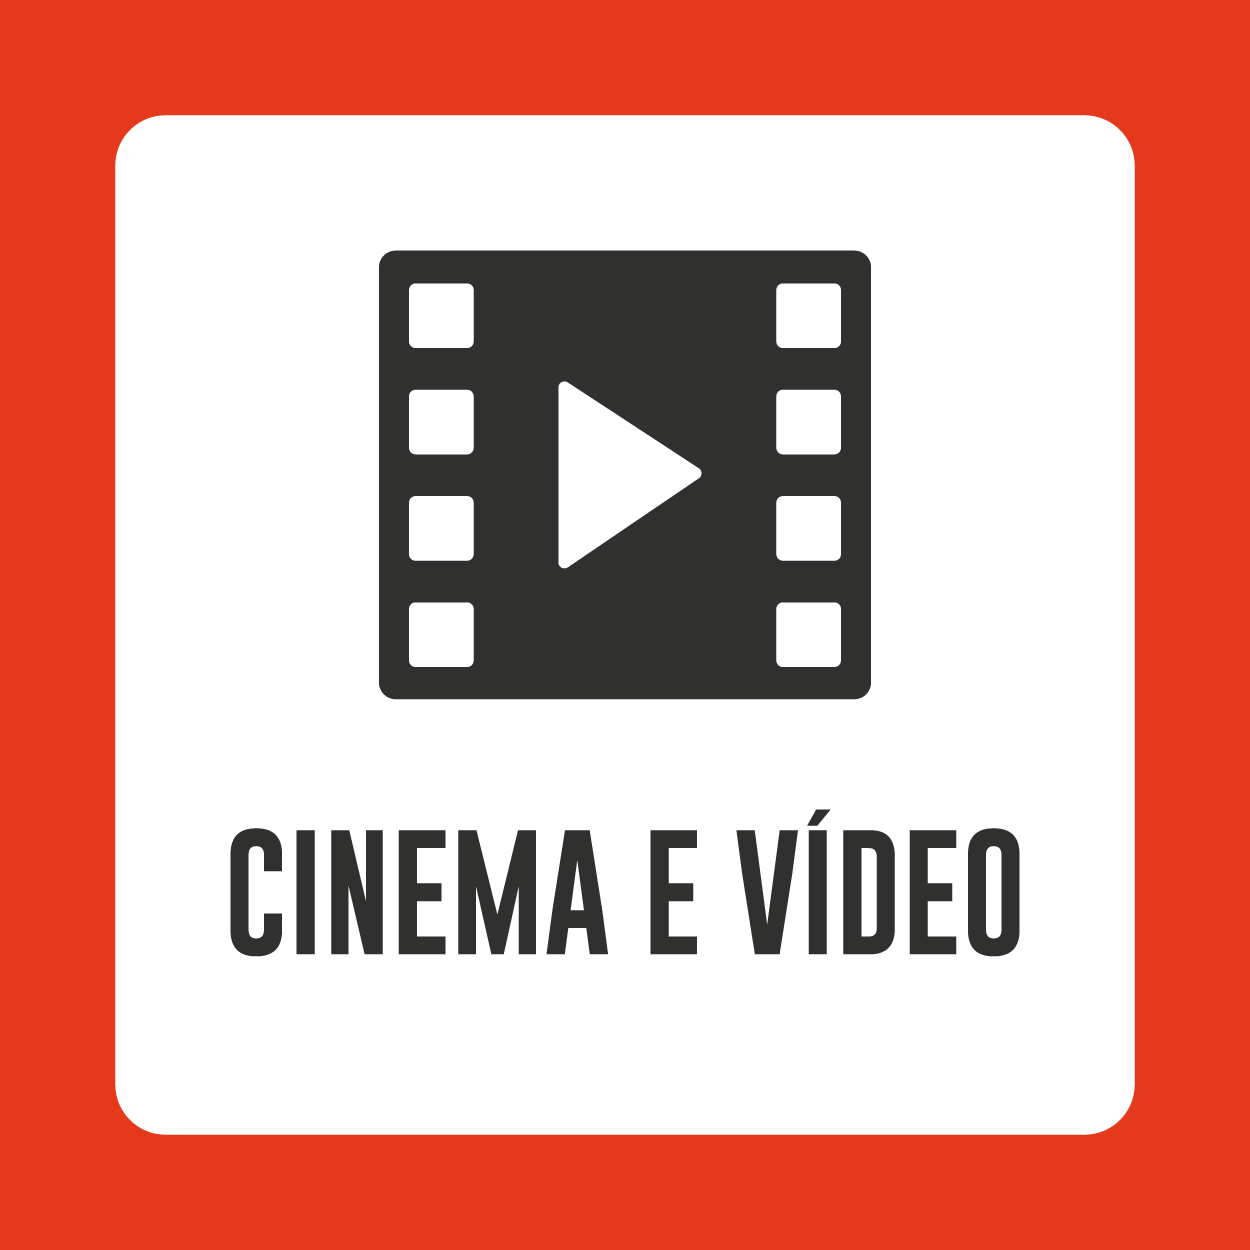 Cinema e Video